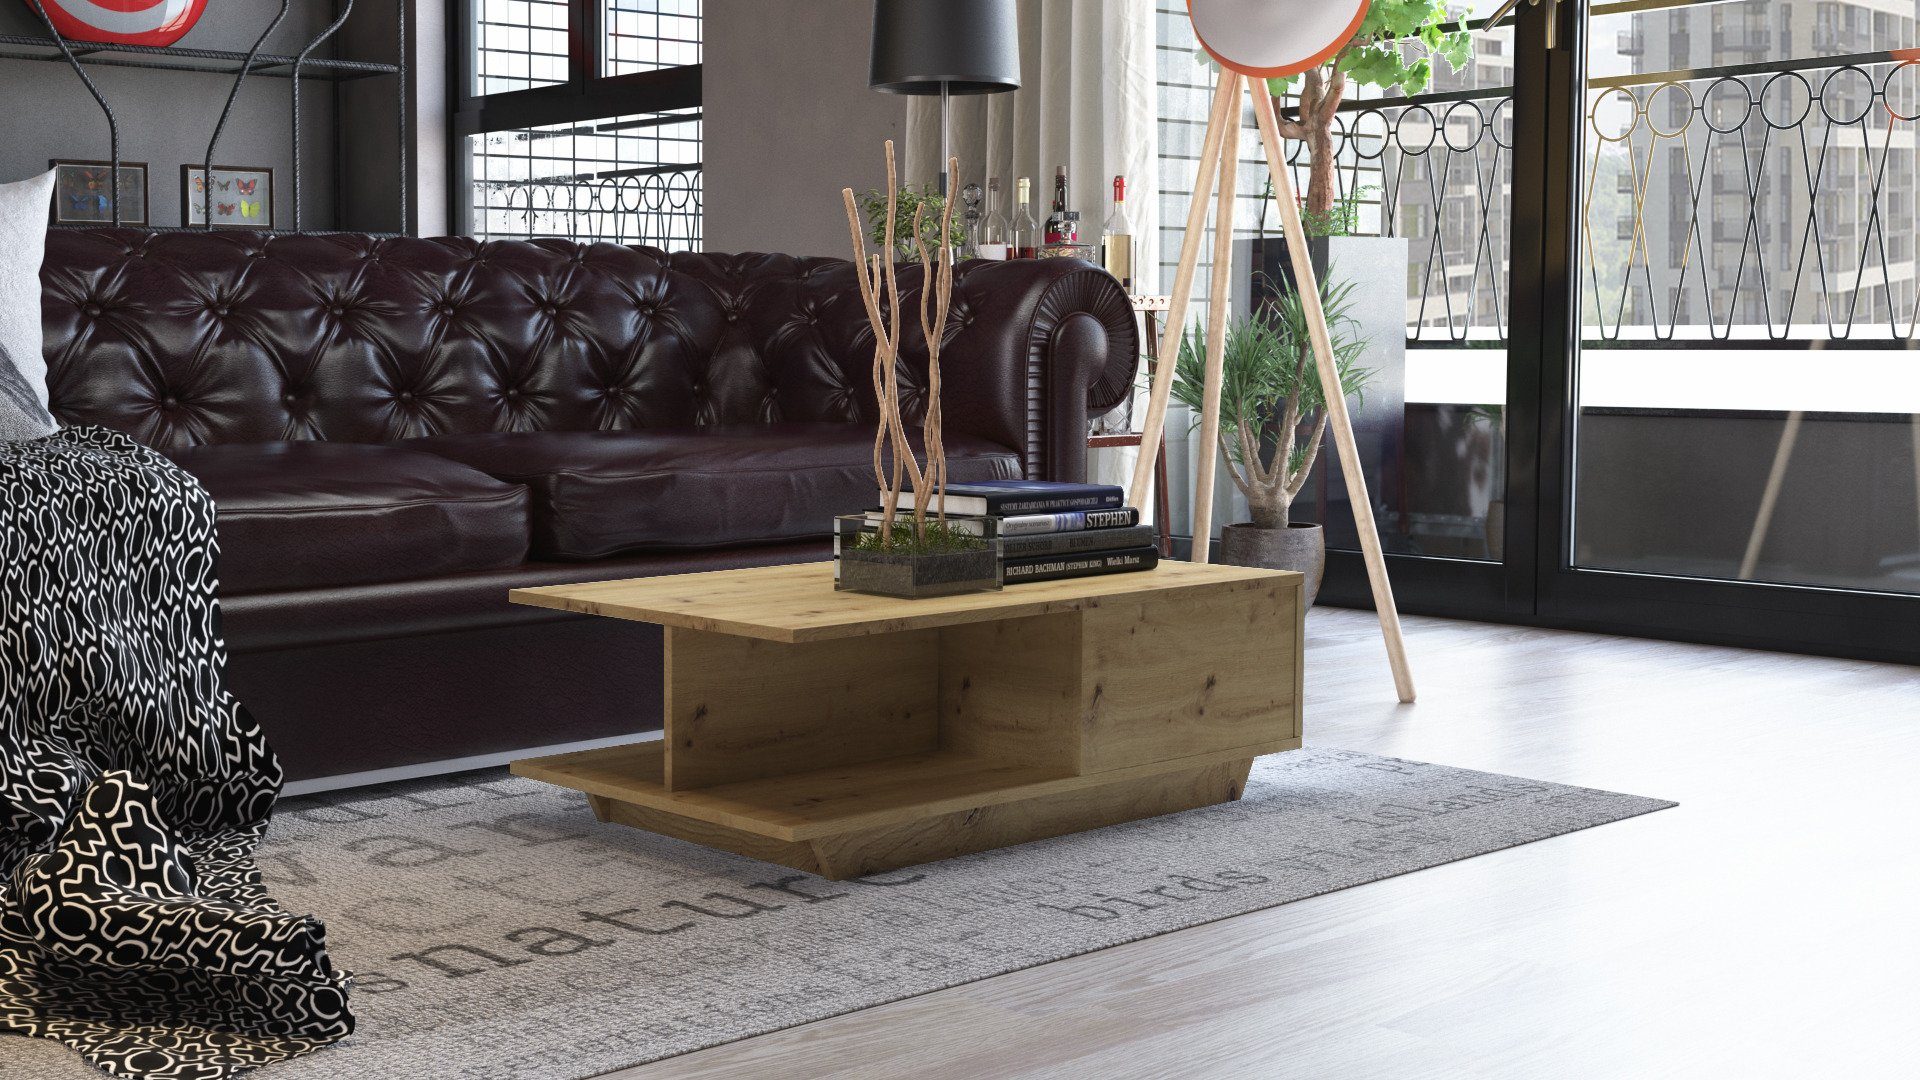 cm 90x60x42 (LxBxH), Eiche Wohnzimmer Couch, braun Artisan Oberfläche, Home Design, Beistell Tisch kratzfeste Couchtisch Collective Loft Beistelltisch